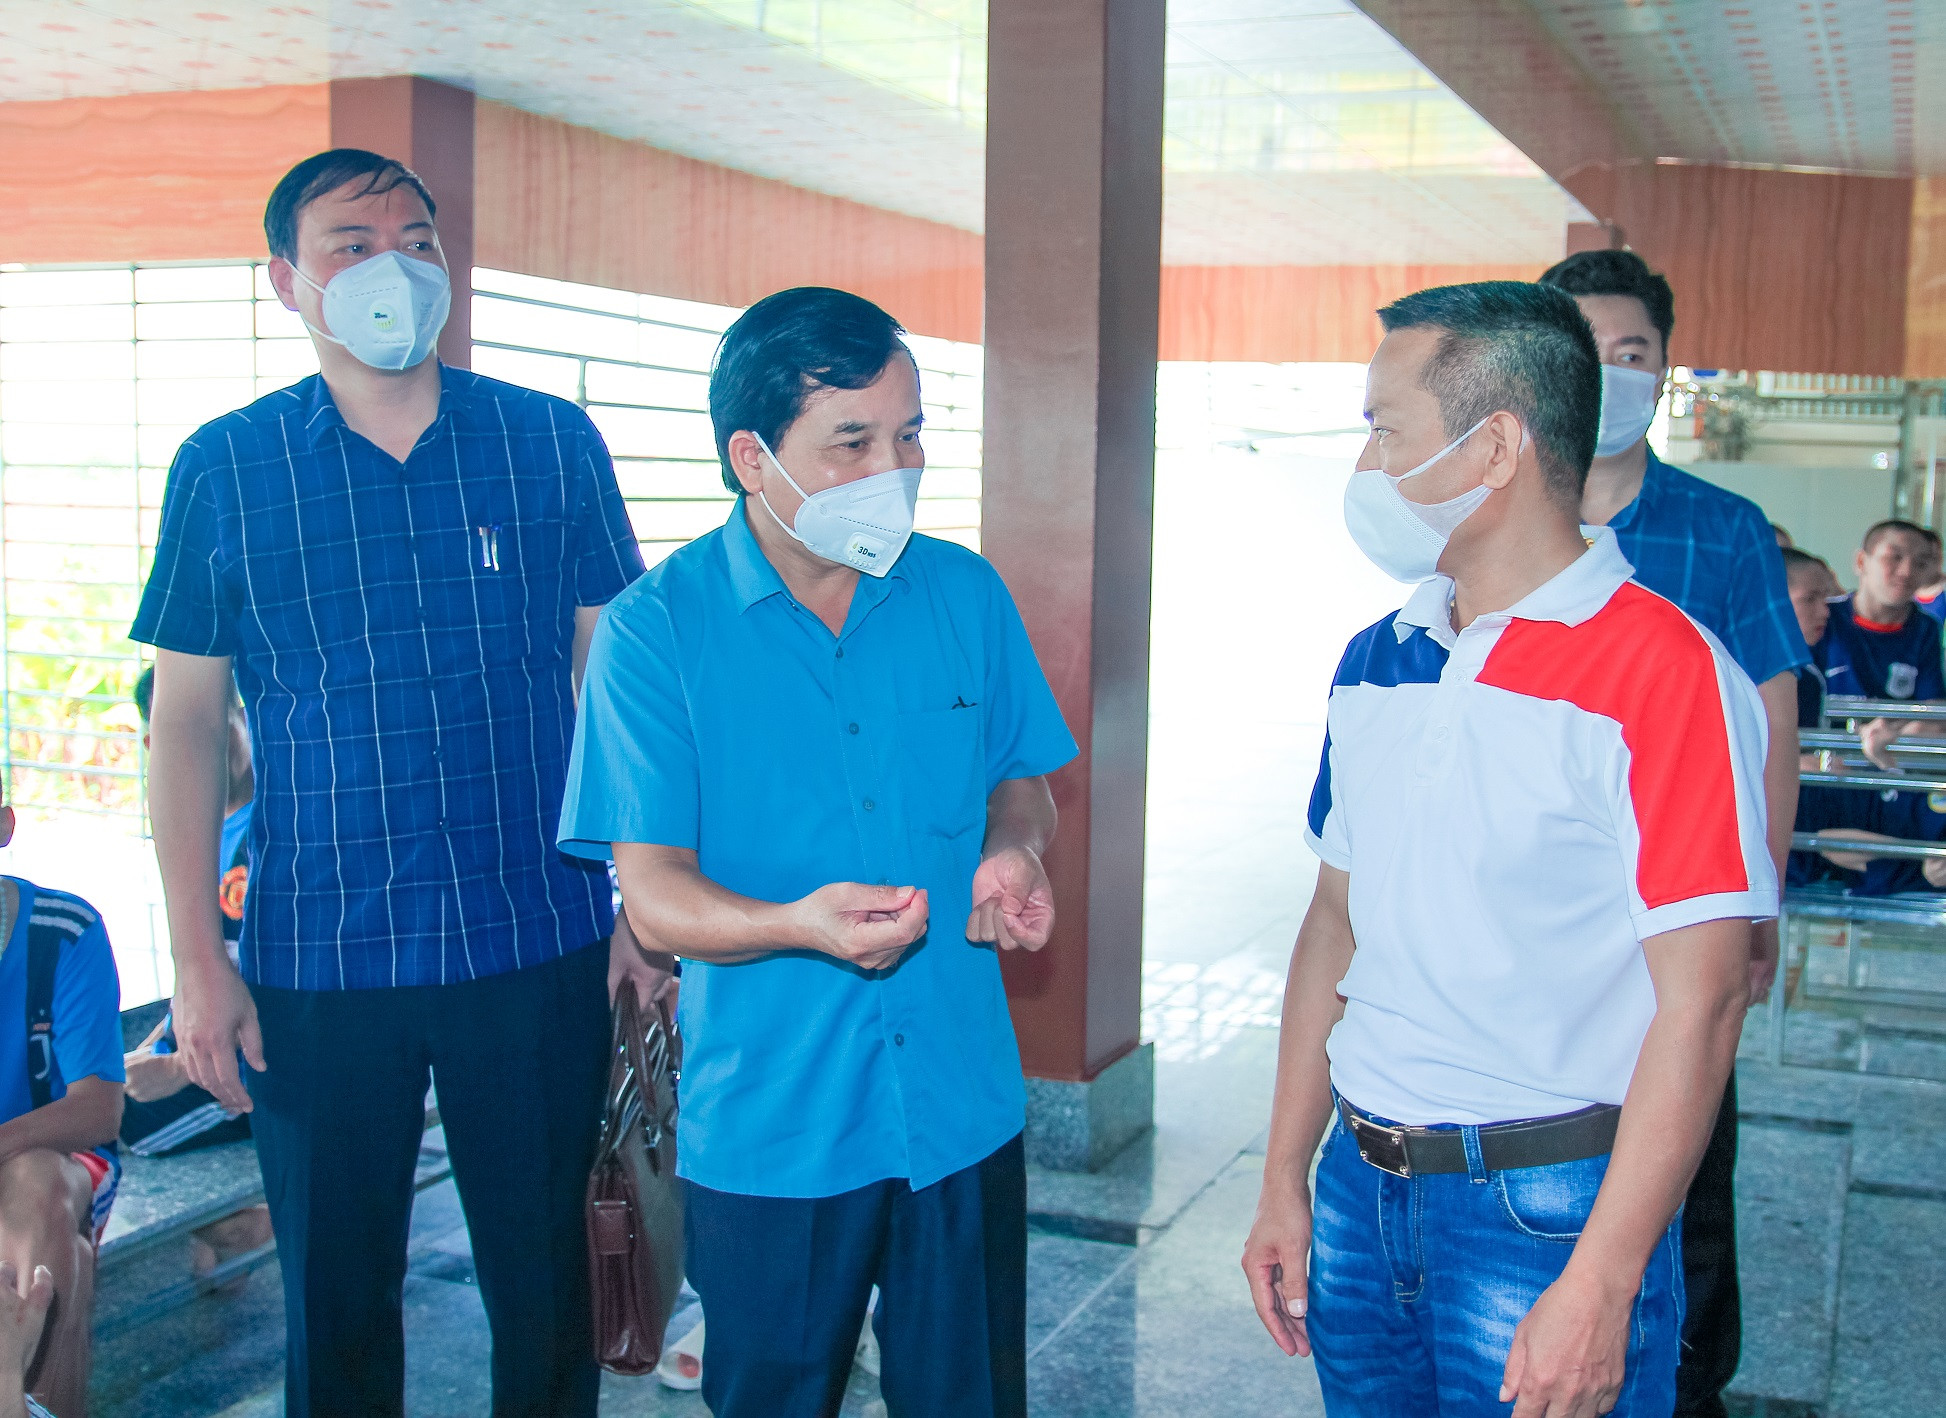 Đoàn giám sát gặp gỡ, trao đổi với lãnh đạo cơ sở bảo trợ xã hội Thiện Tâm. Ảnh Nguyễn Thị Vân